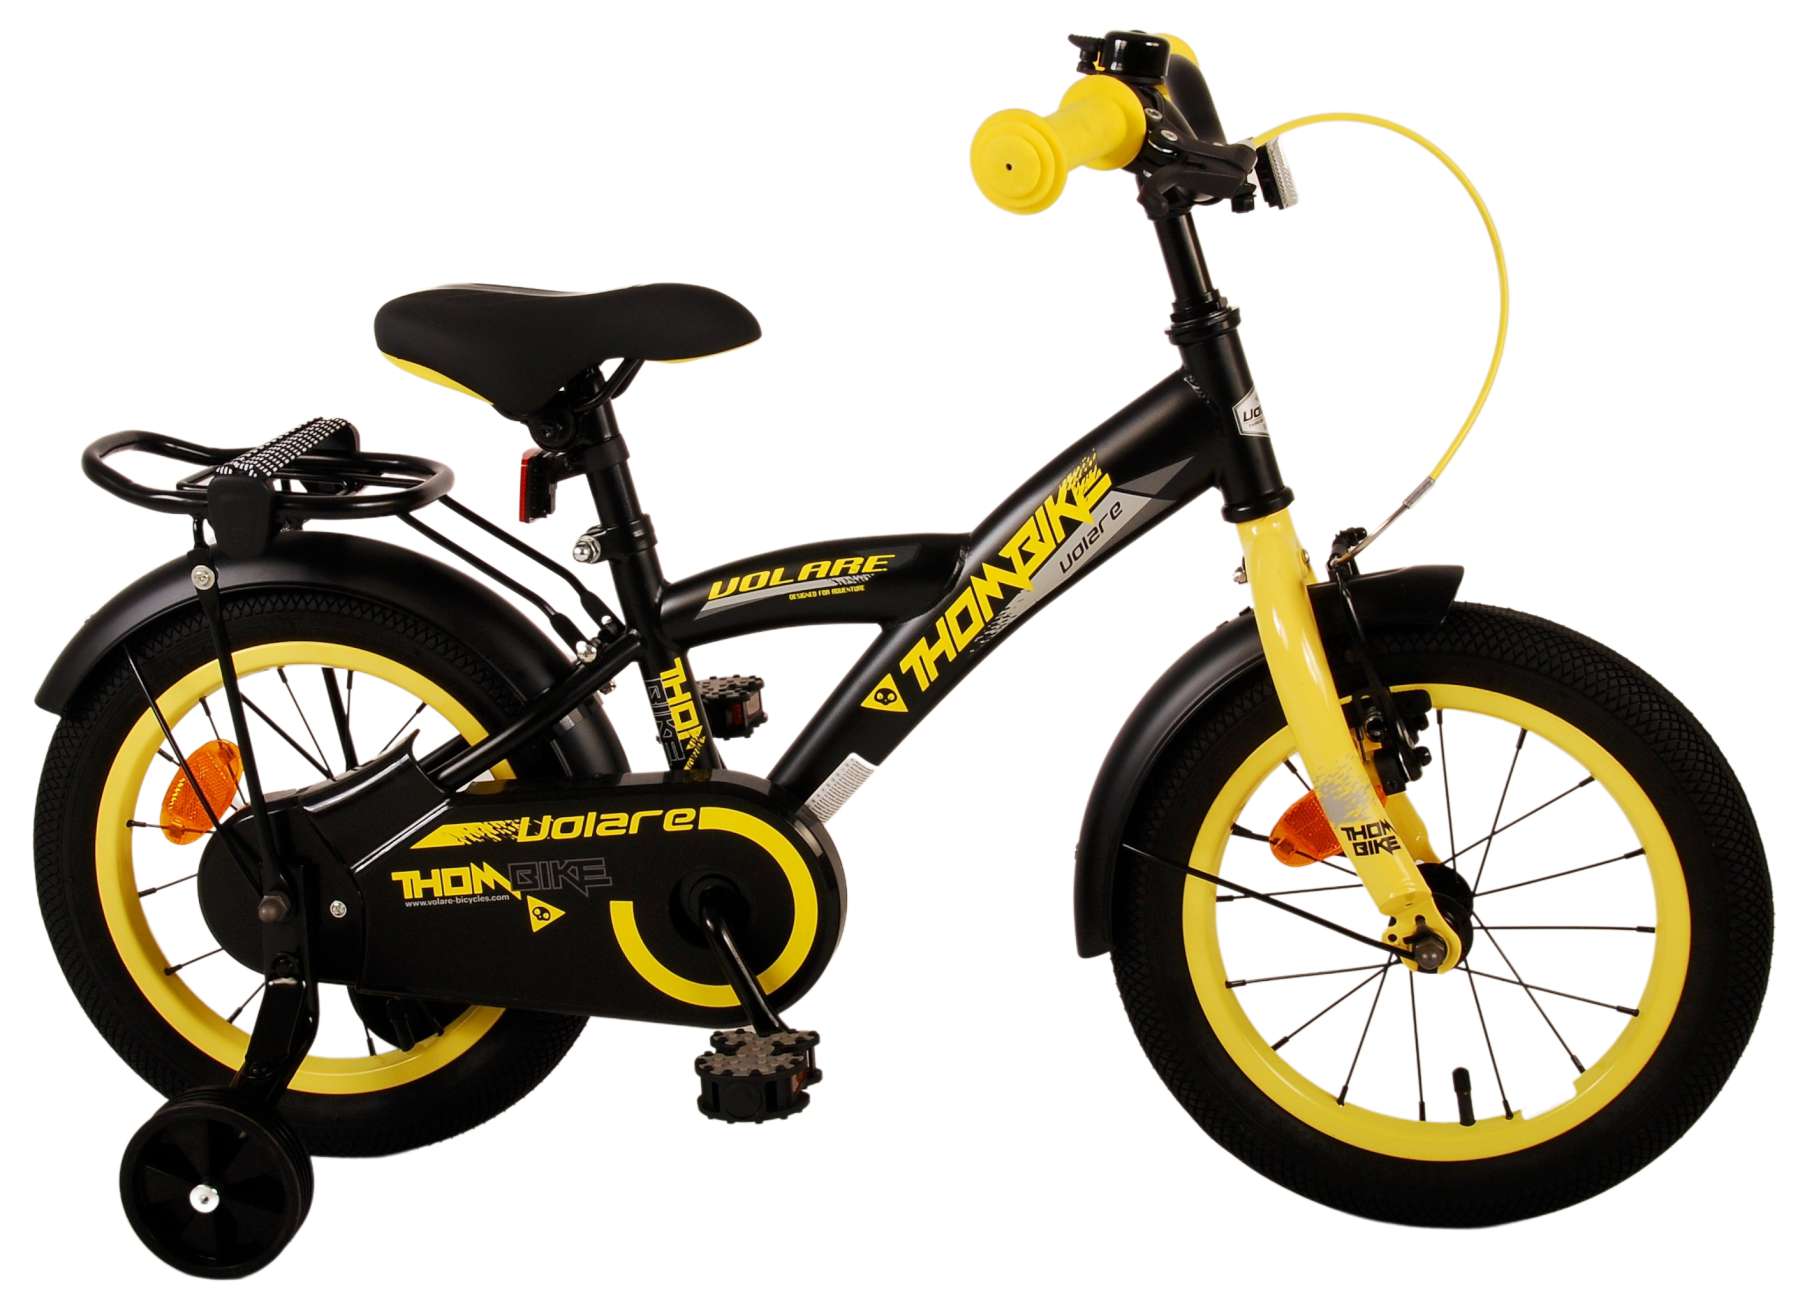 Kinderfahrrad Thombike für Jungen 14 Zoll Kinderrad in Schwarz Gelb